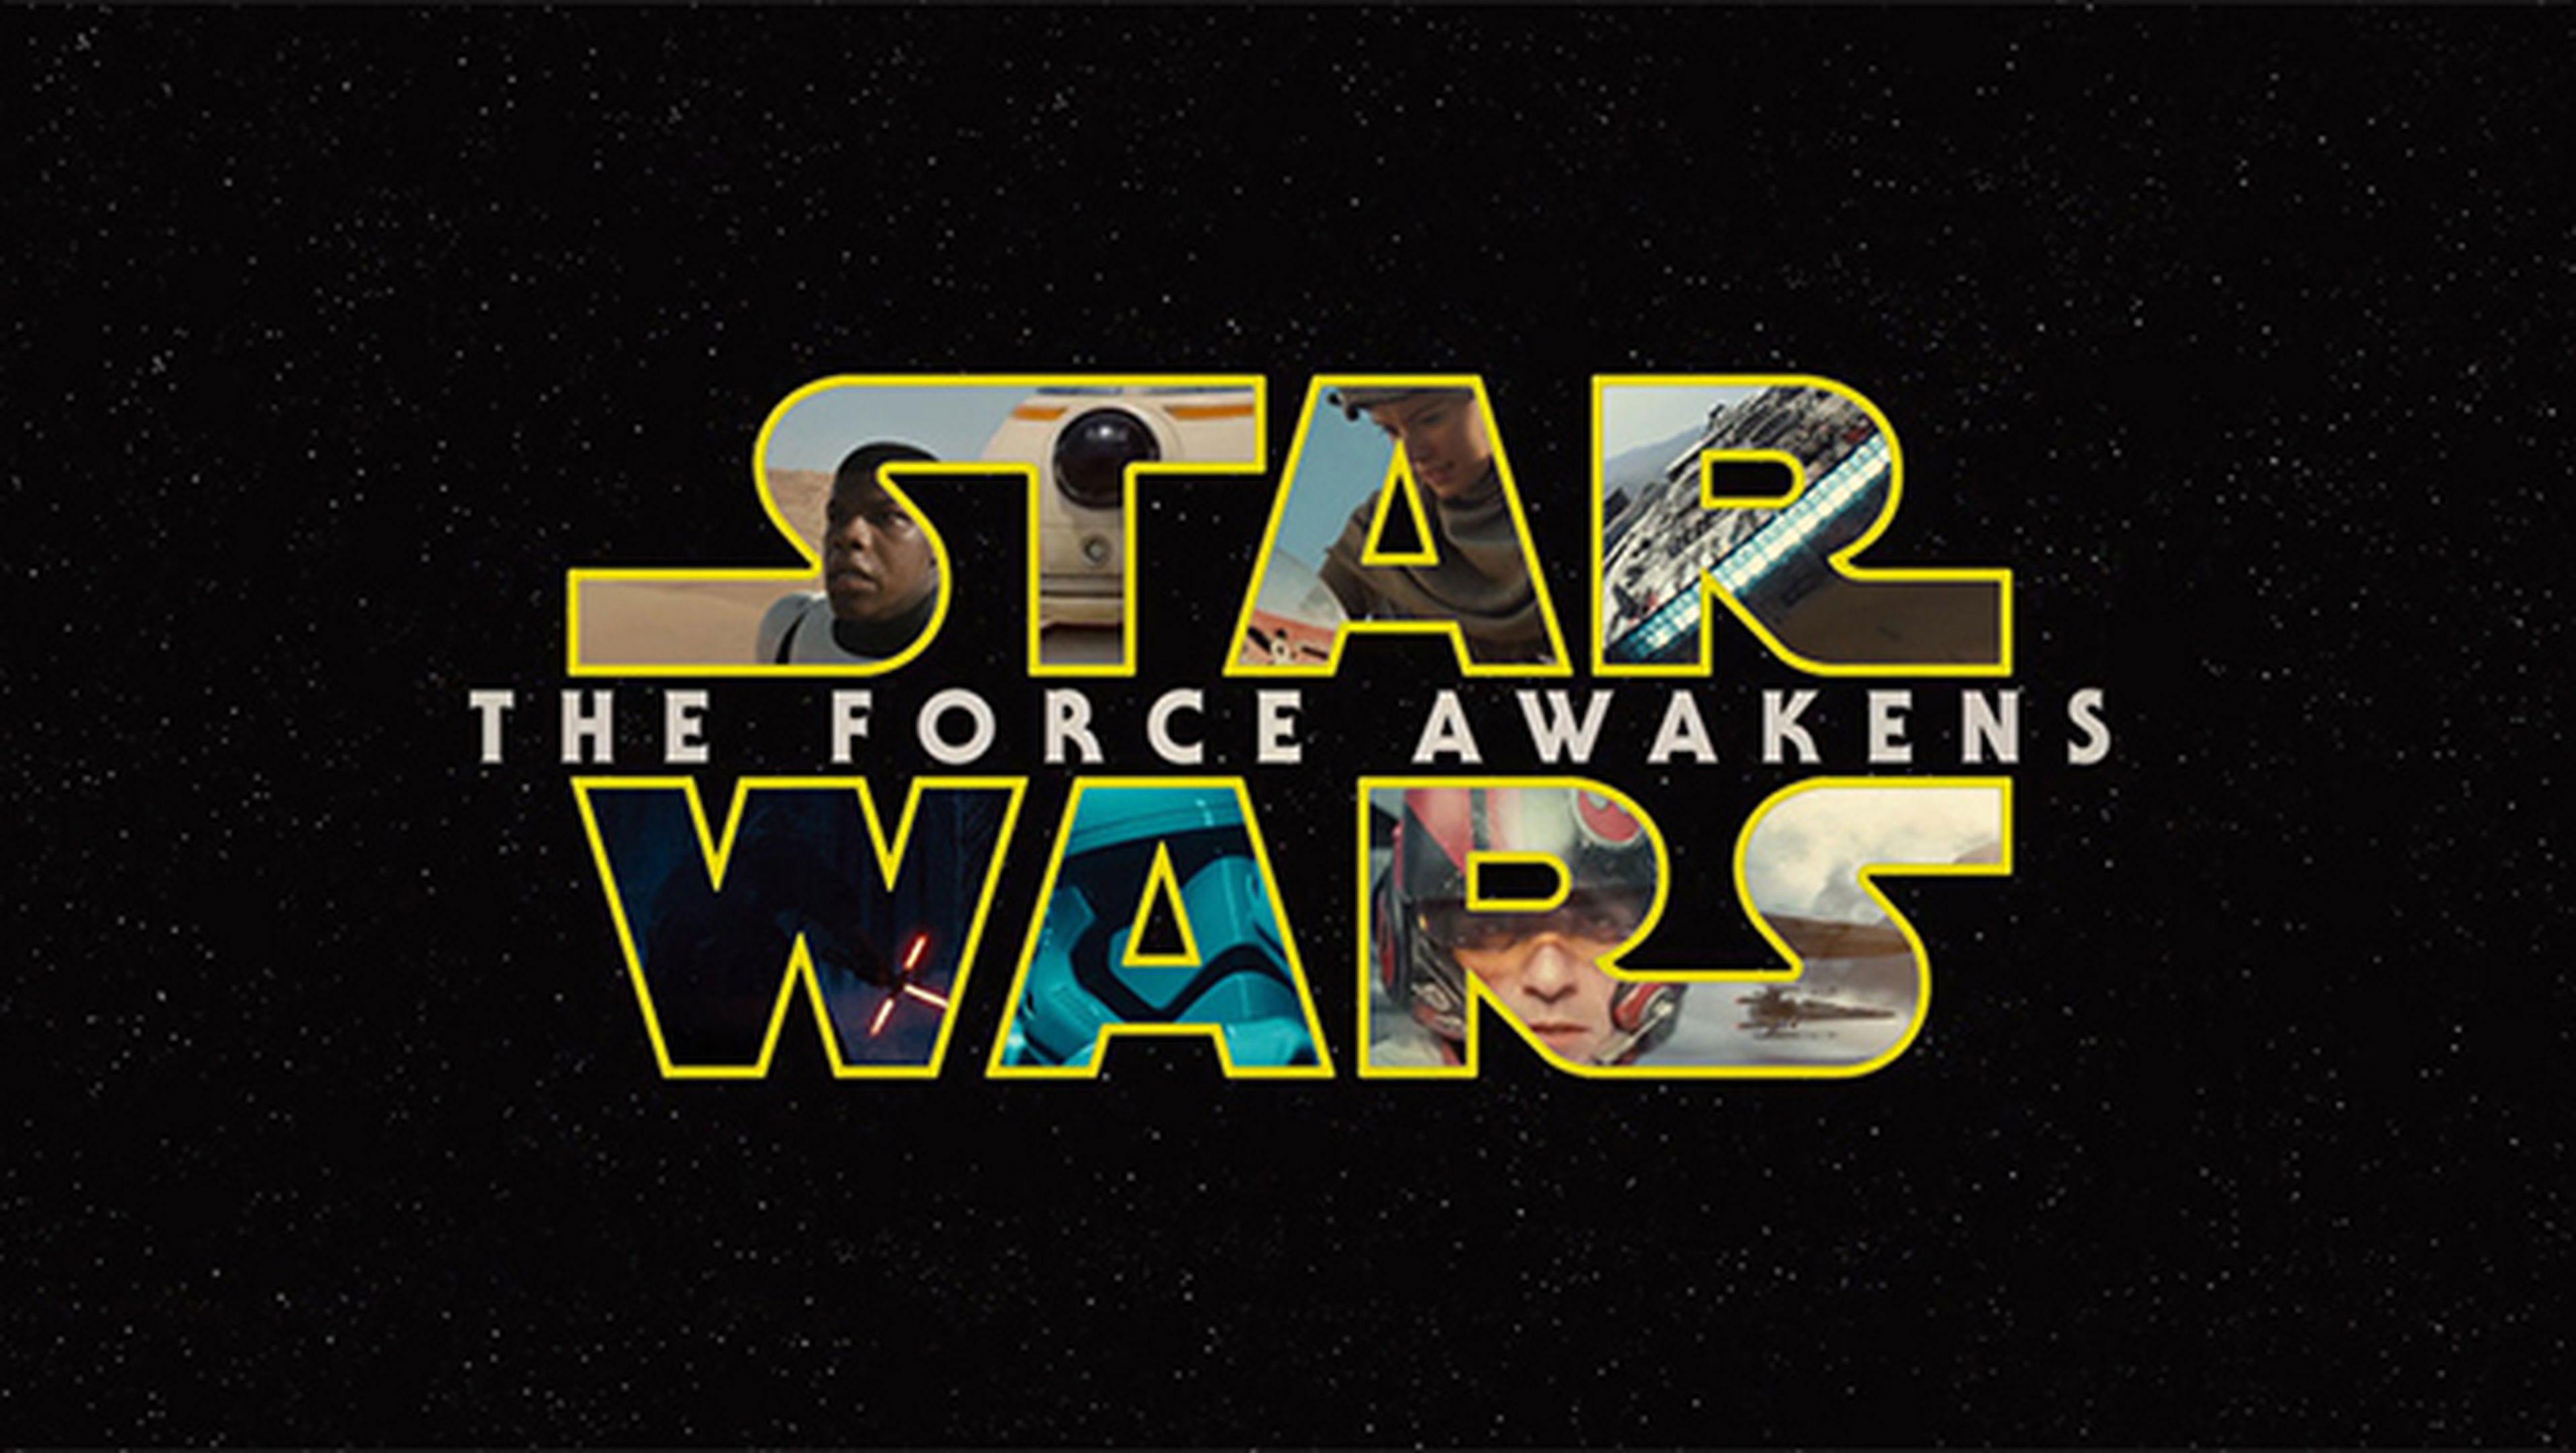 Nuevo tráiler de Star Wars: El Despertar de la Fuerza